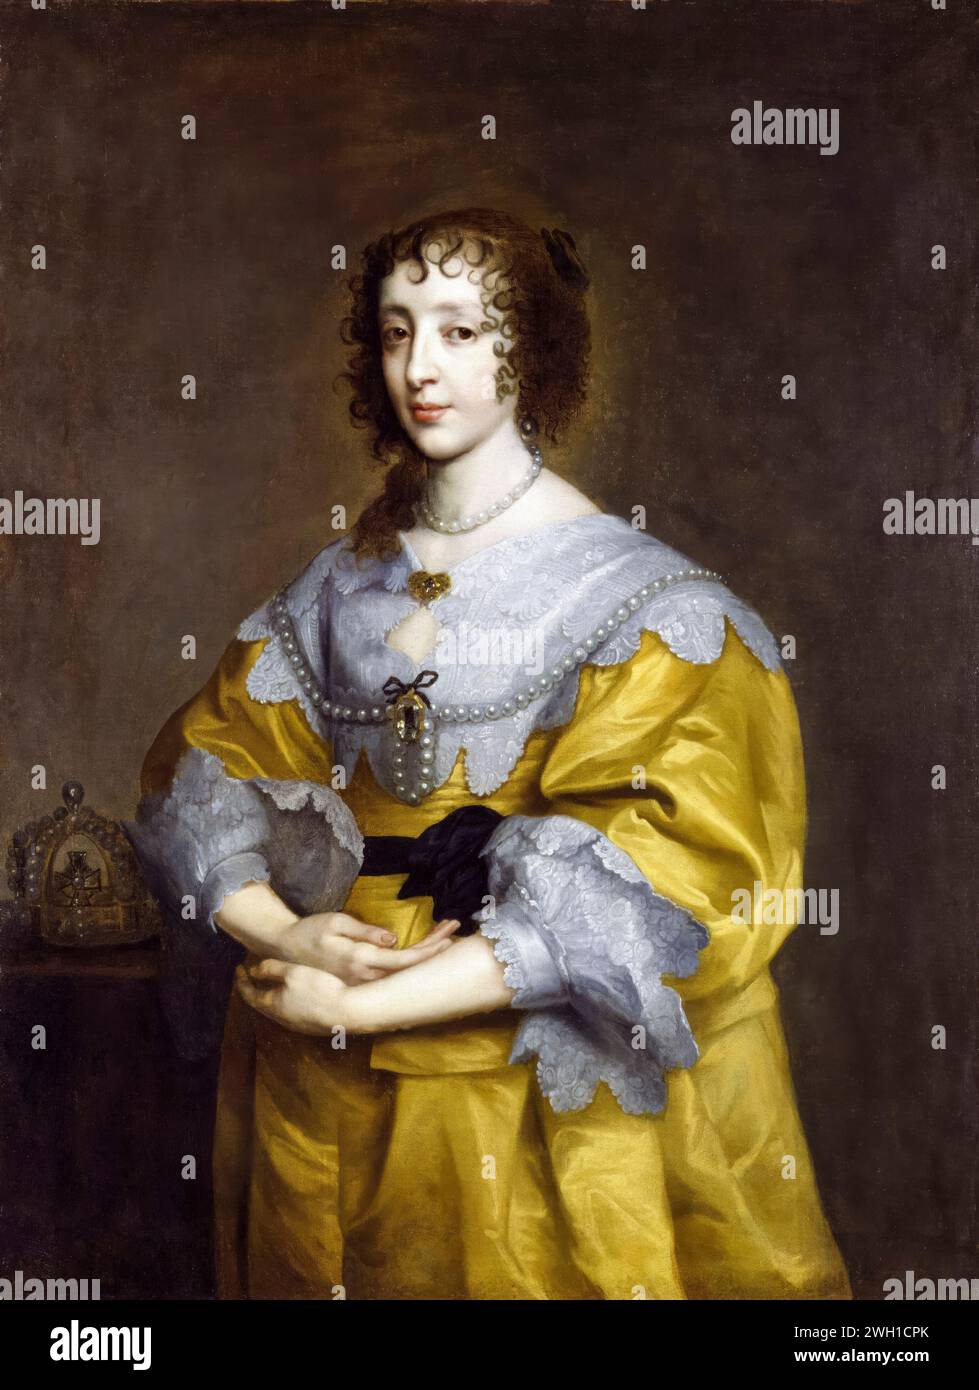 Una regina incinta Enrichetta Maria (1609-1669), regina consorte e moglie di Carlo i d'Inghilterra, Scozia e Irlanda, ritratti ad olio su tela dopo Sir Anthony van Dyck, 1632-1635 Foto Stock